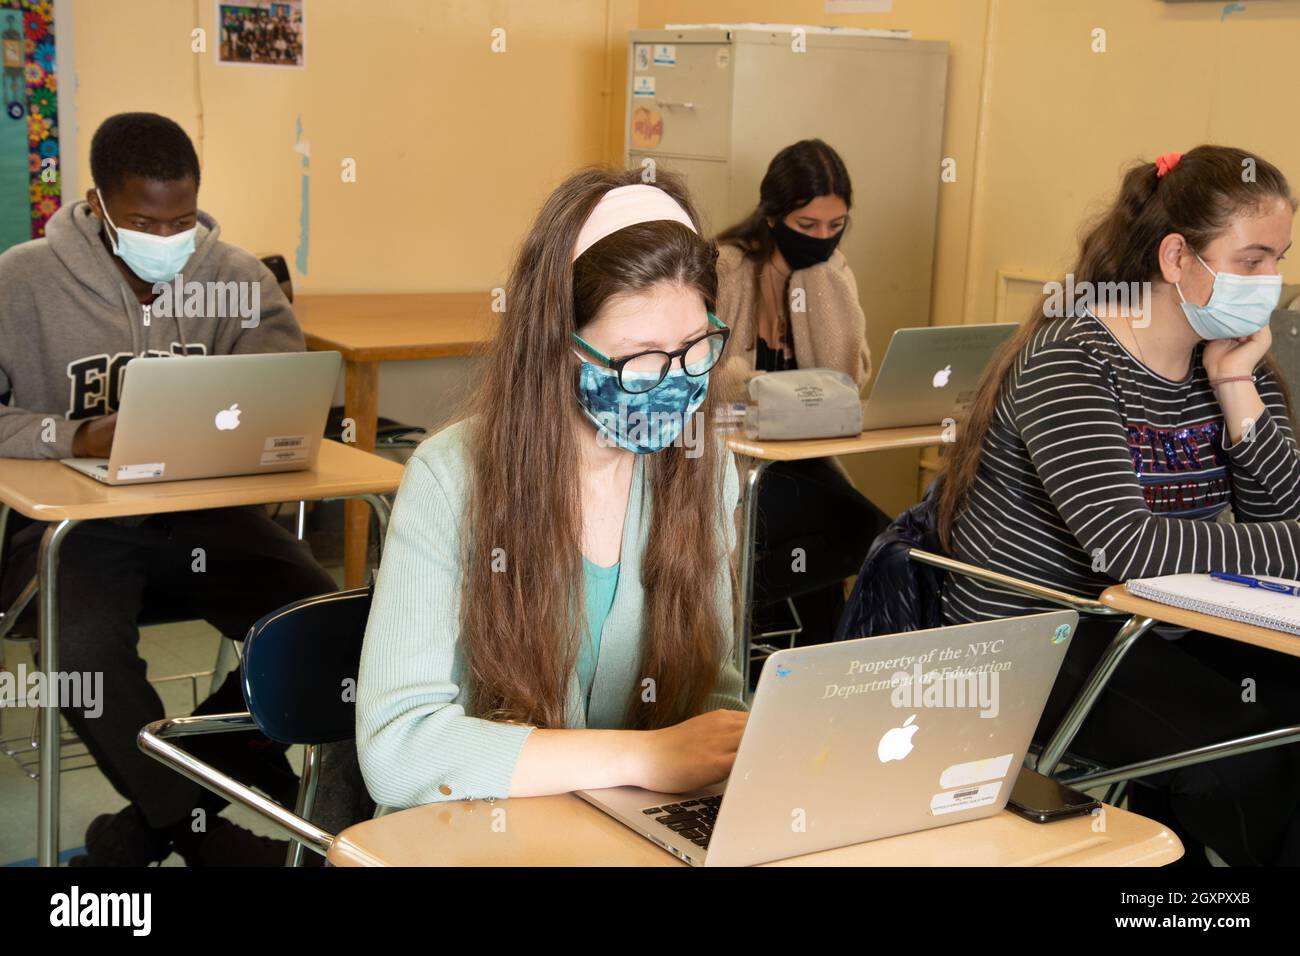 Bildung High School, Klassenzimmer Szene, Studenten bei der Arbeit an Schreibtischen mit Laptop-Computern, alle tragen Gesichtsmasken gegen Covid-19-Infektion zu schützen Stockfoto